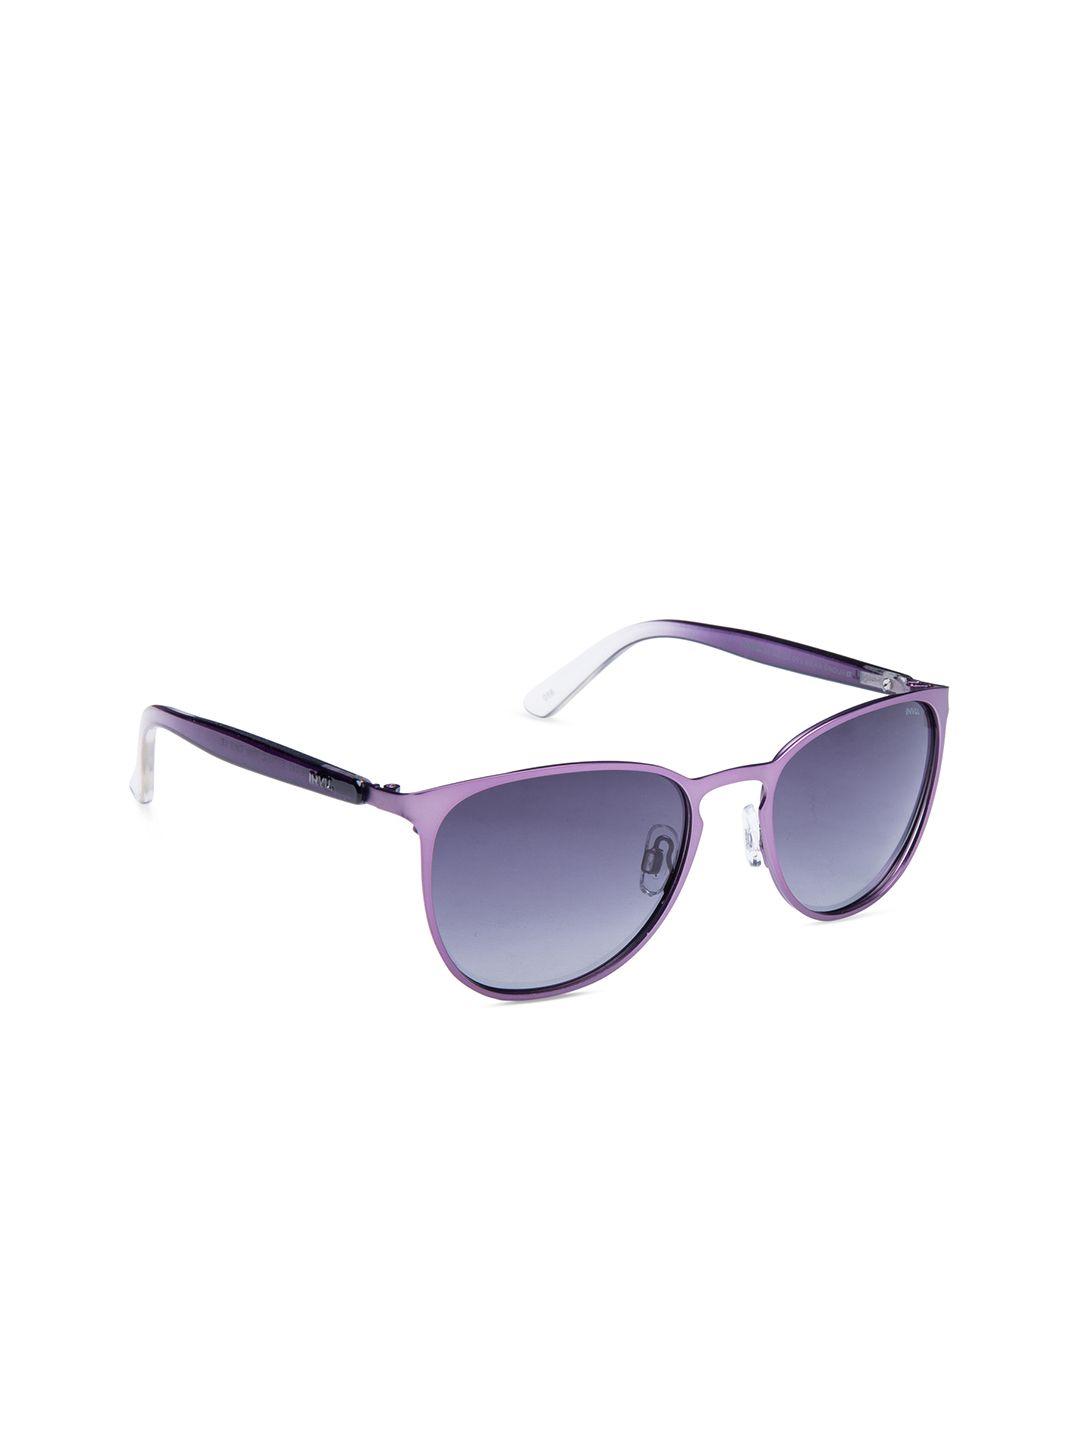 invu-women-oval-sunglasses